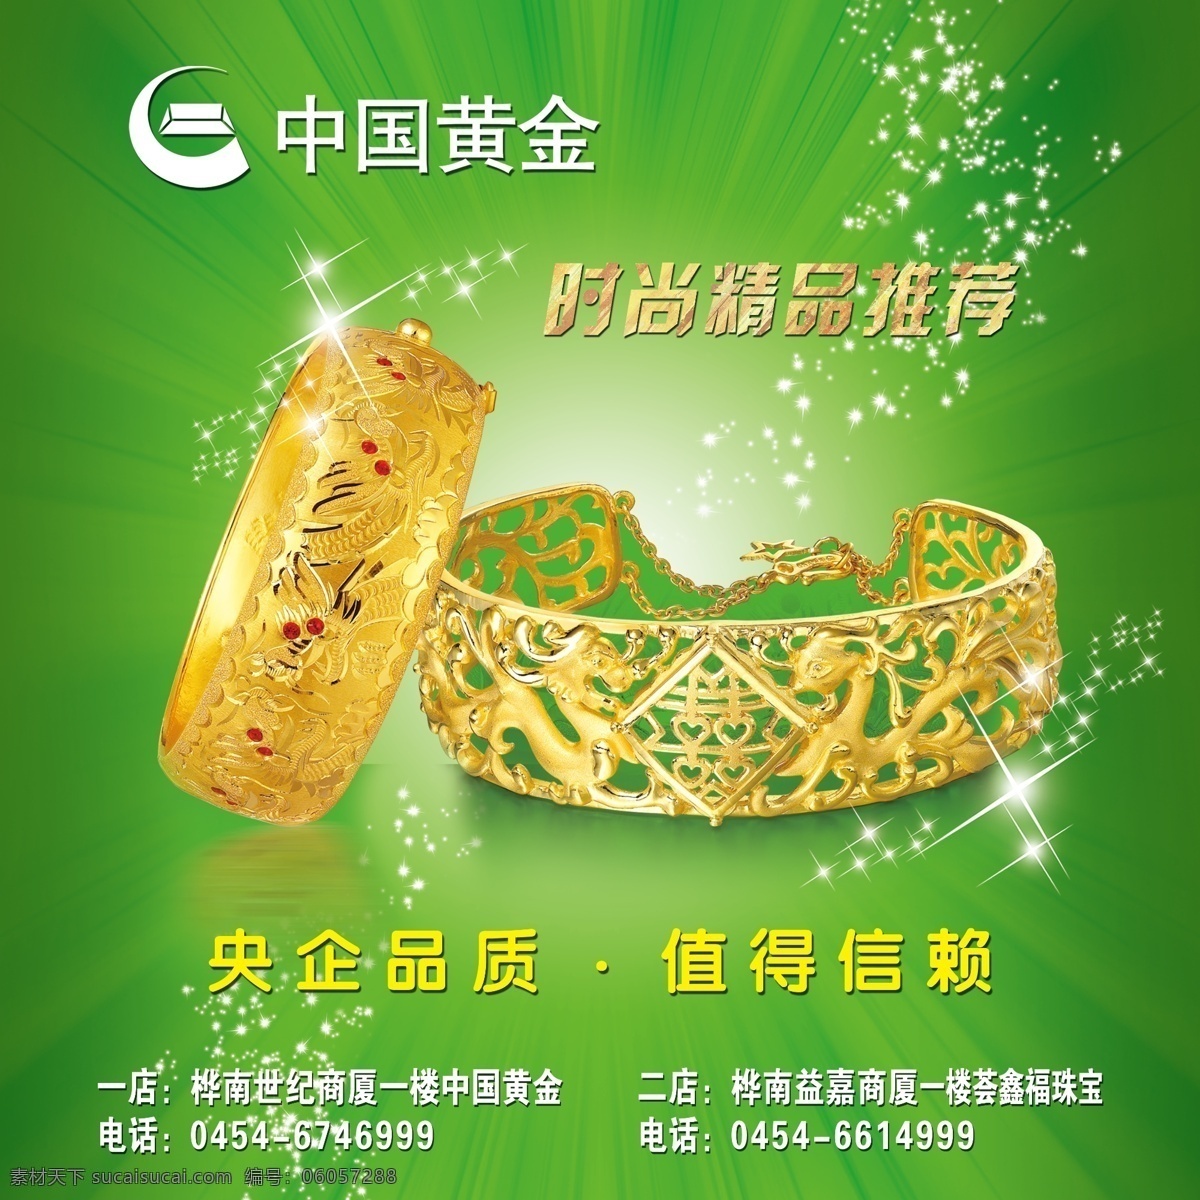 中国 黄金 时尚 精品推荐 中国黄金 手镯 绿色背景 分层